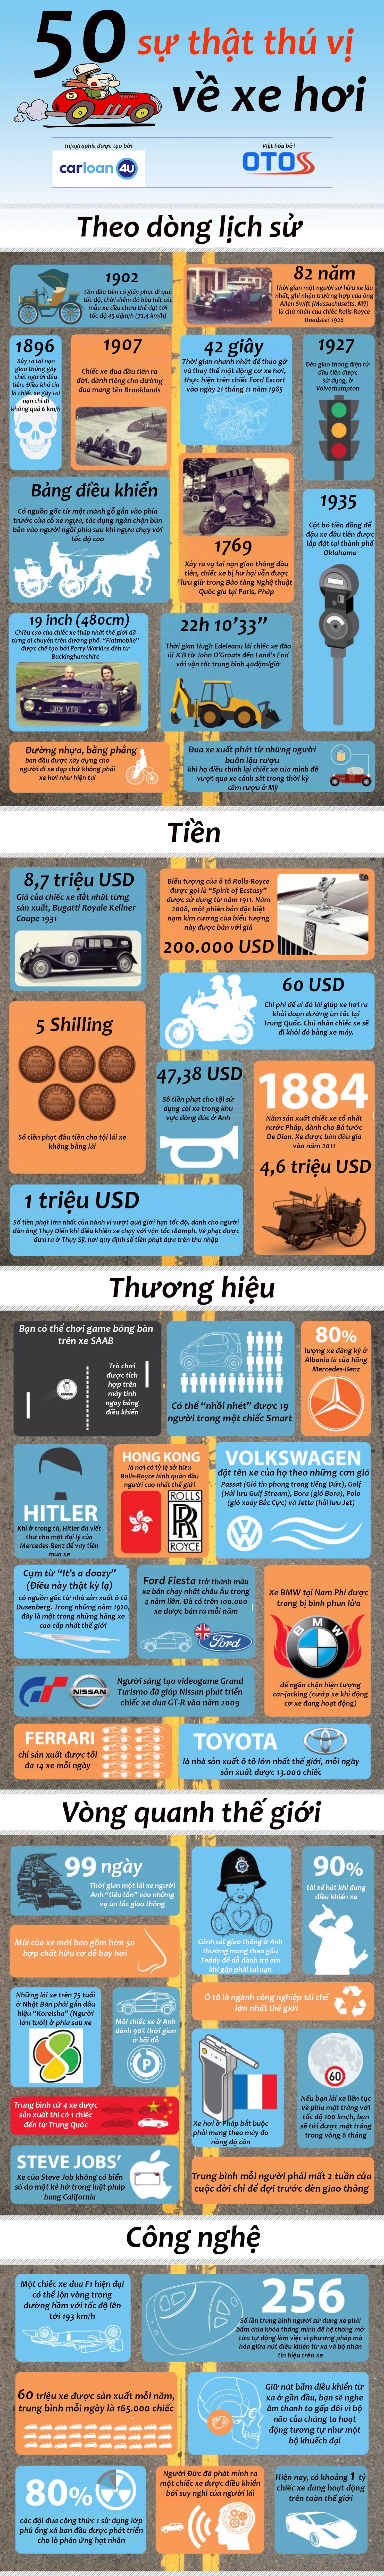 Infographic - 50 sự thật thú vị về xe hơi